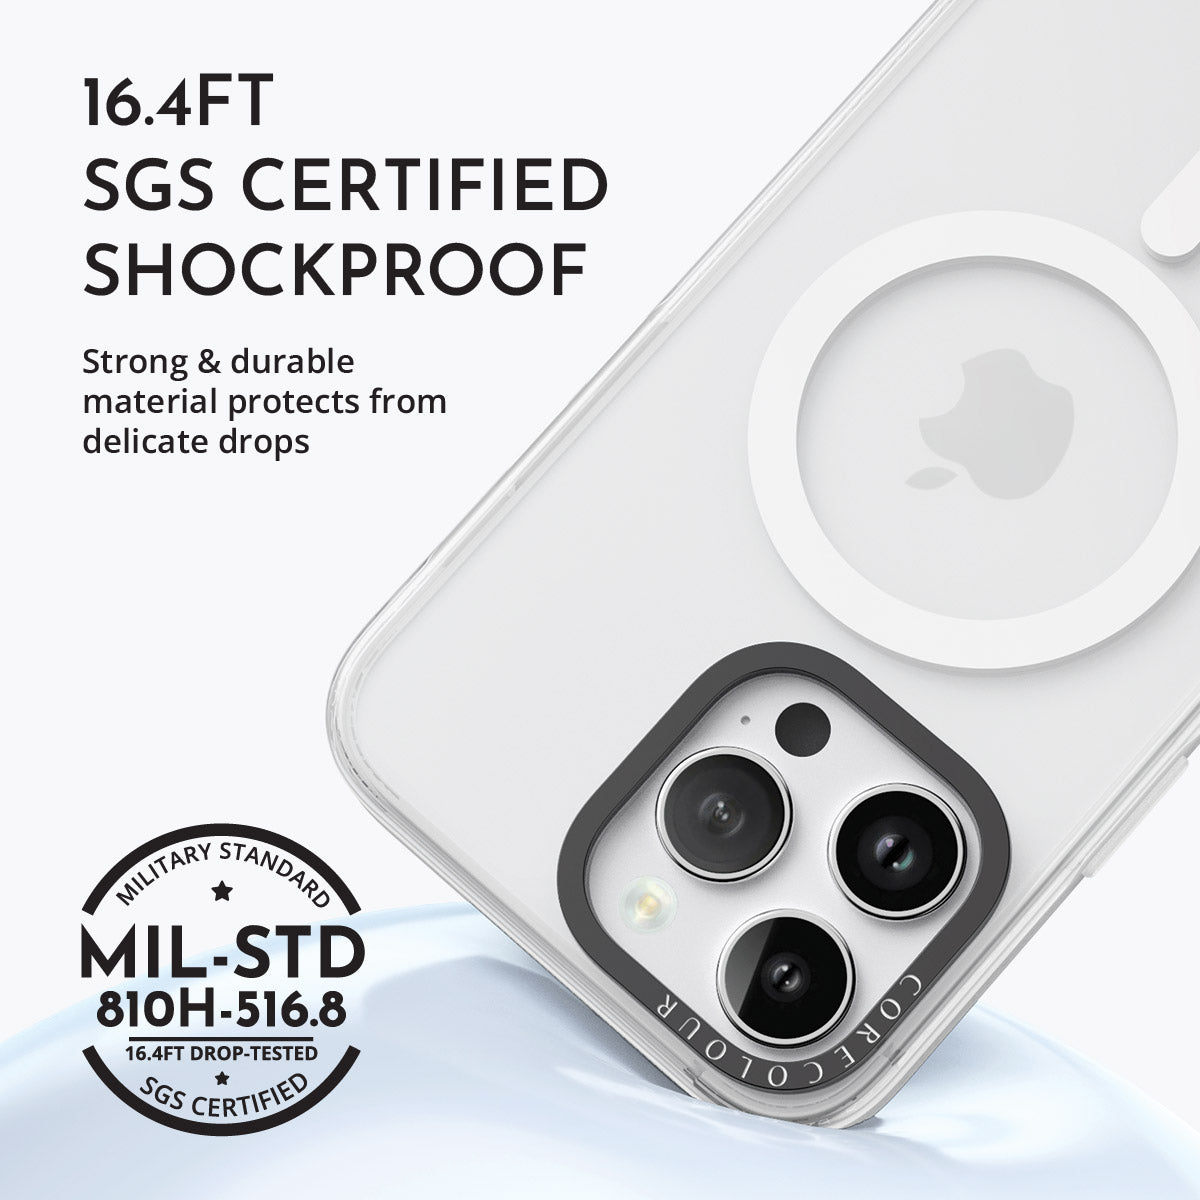 iPhone 13 Pro Max Elephant Rock Phone Case Magsafe Compatible - CORECOLOUR AU